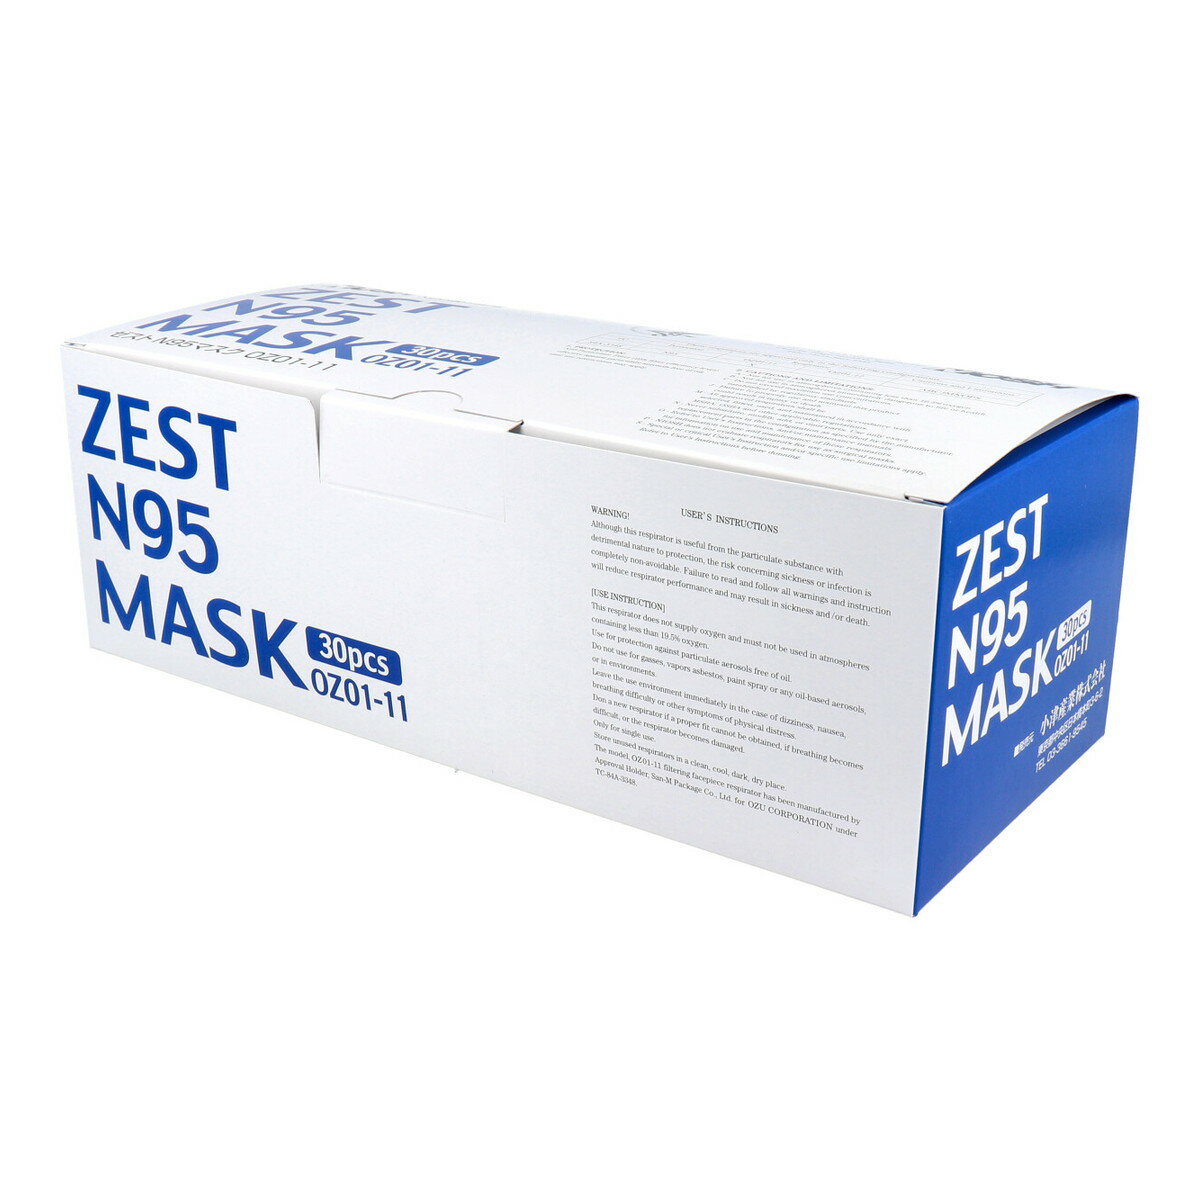 【送料込 まとめ買い×10個セット】ゼスト ZEST N95マスク 個包装 30枚入 OZ01-11